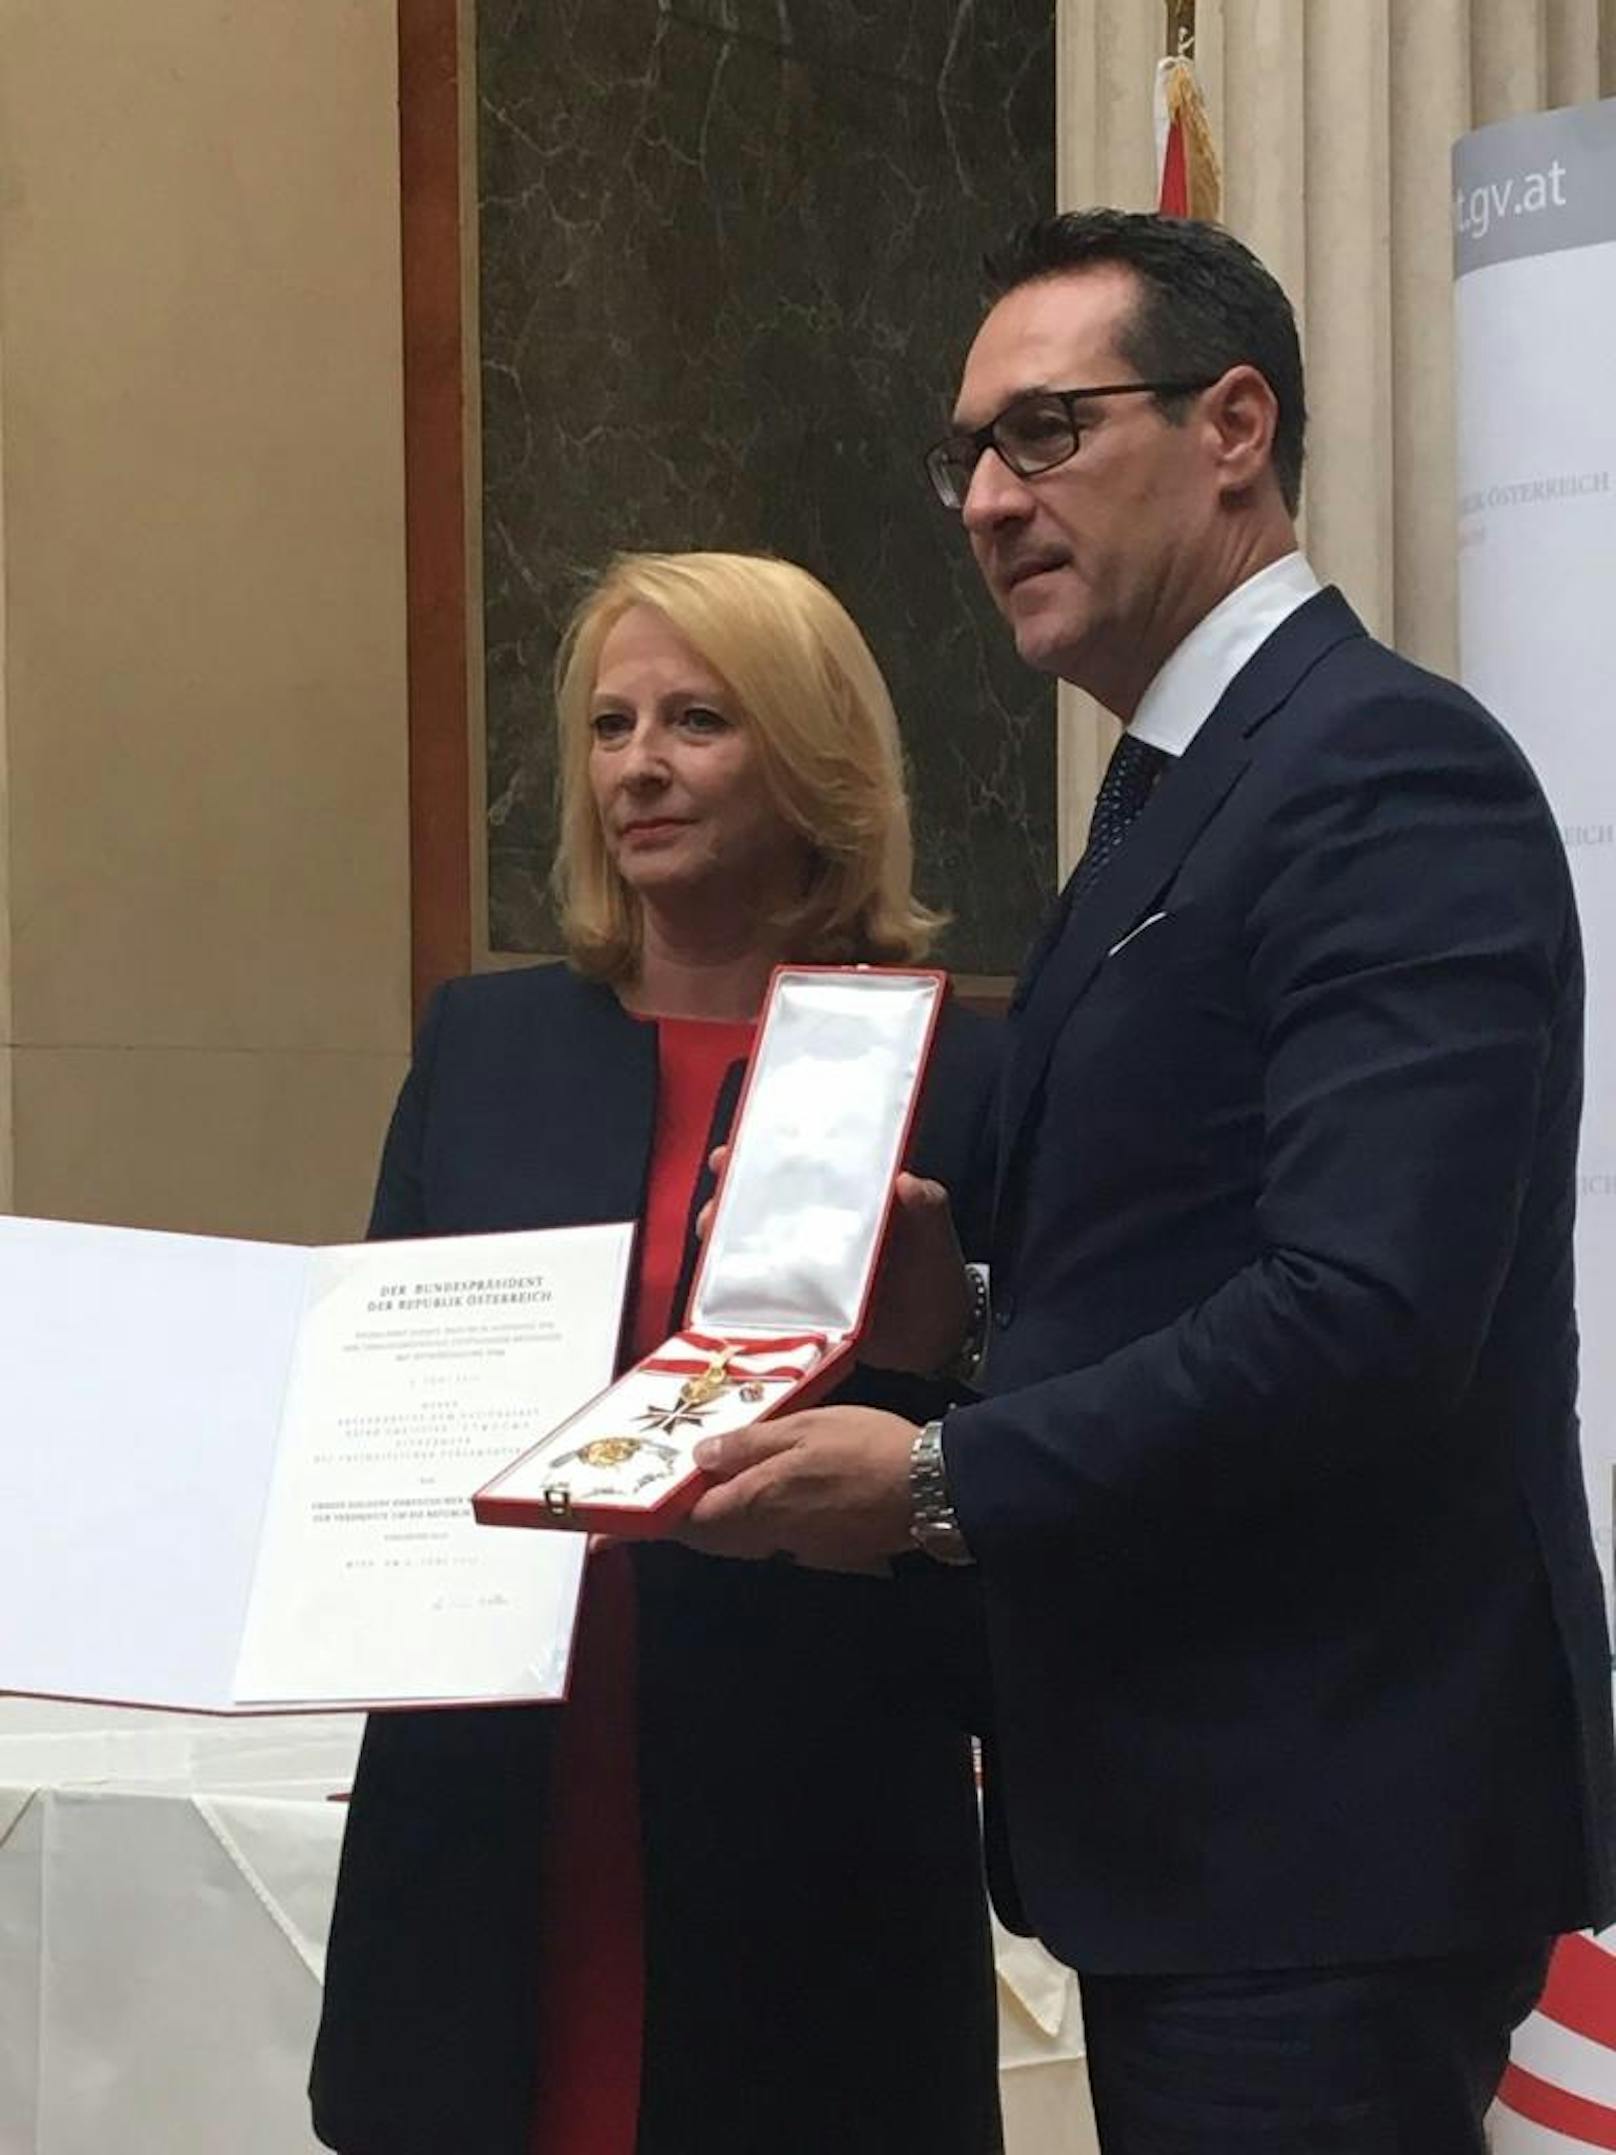 Am 13. Juli 2017 wurde Strache durch Nationalratspräsidentin Doris Bures das Große Goldene Ehrenzeichen mit dem Stern für Verdienste um die Republik Österreich verliehen. Zuvor hatte der damalige Bundespräsident Heinz Fischer 2012 seine Unterschrift unter die Verleihungsurkunde verweigert.